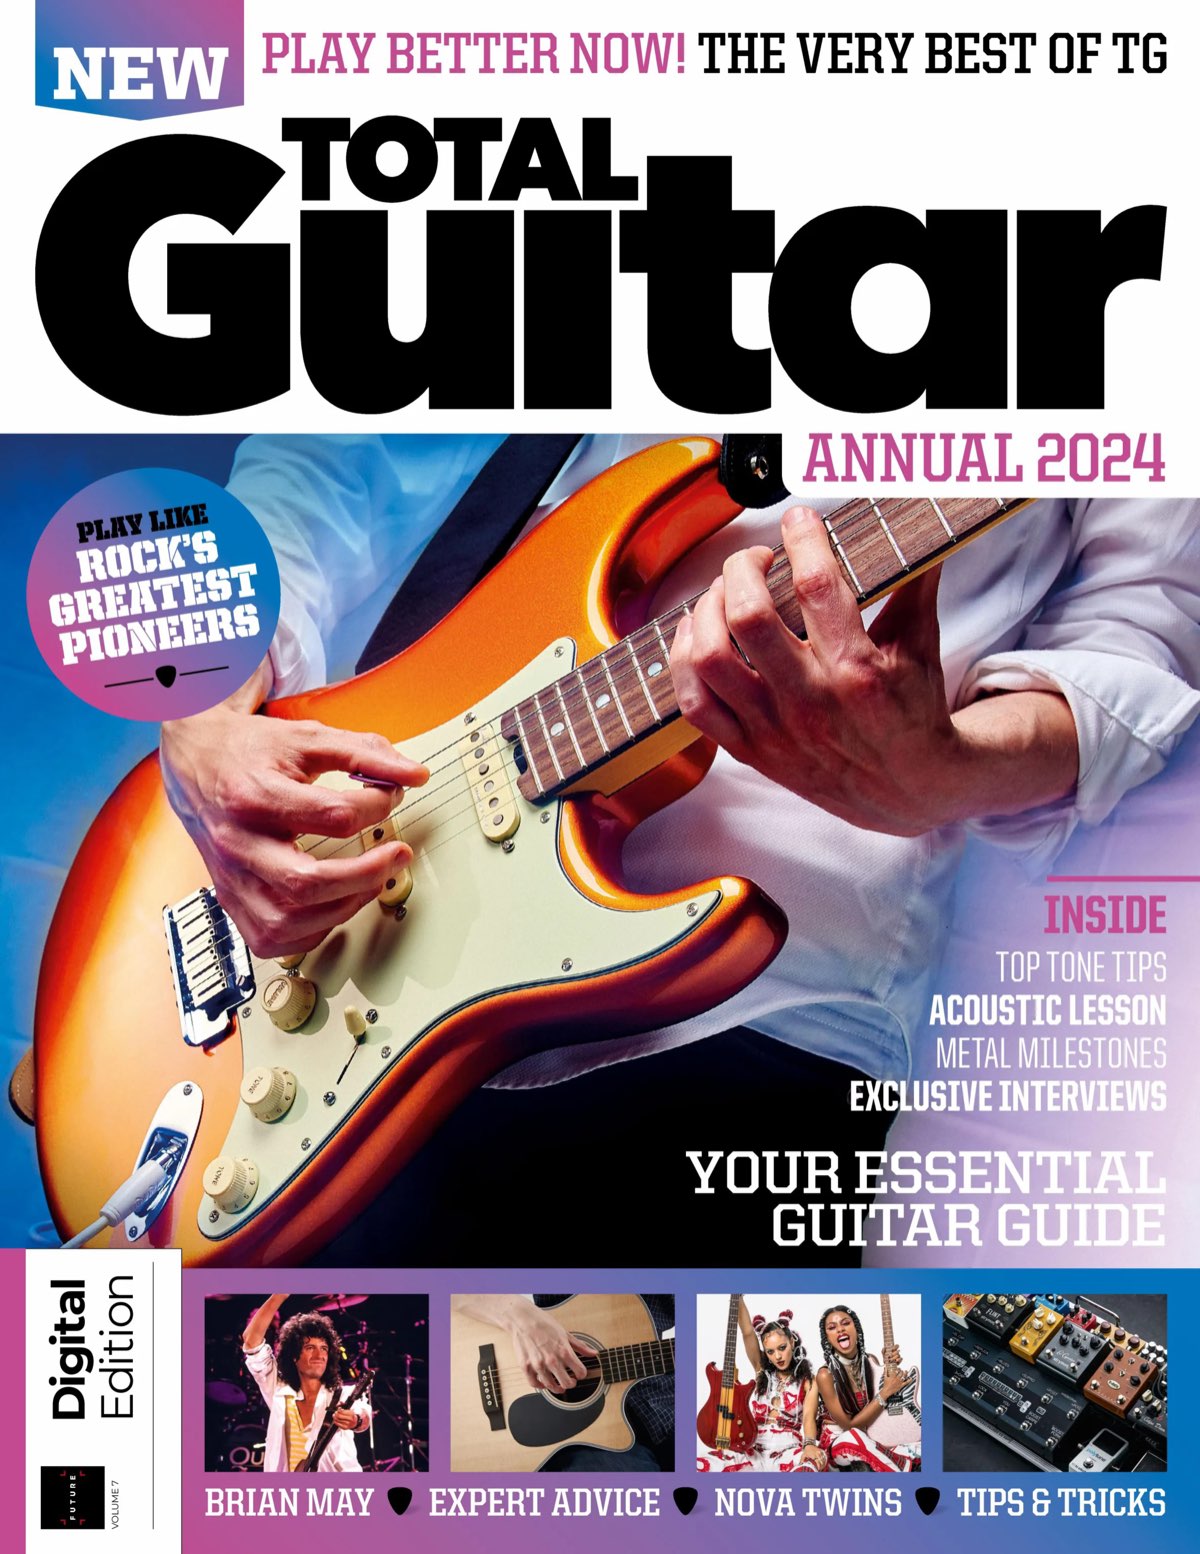 Total Guitar Annual 2024 [Vol. 7, 2023]